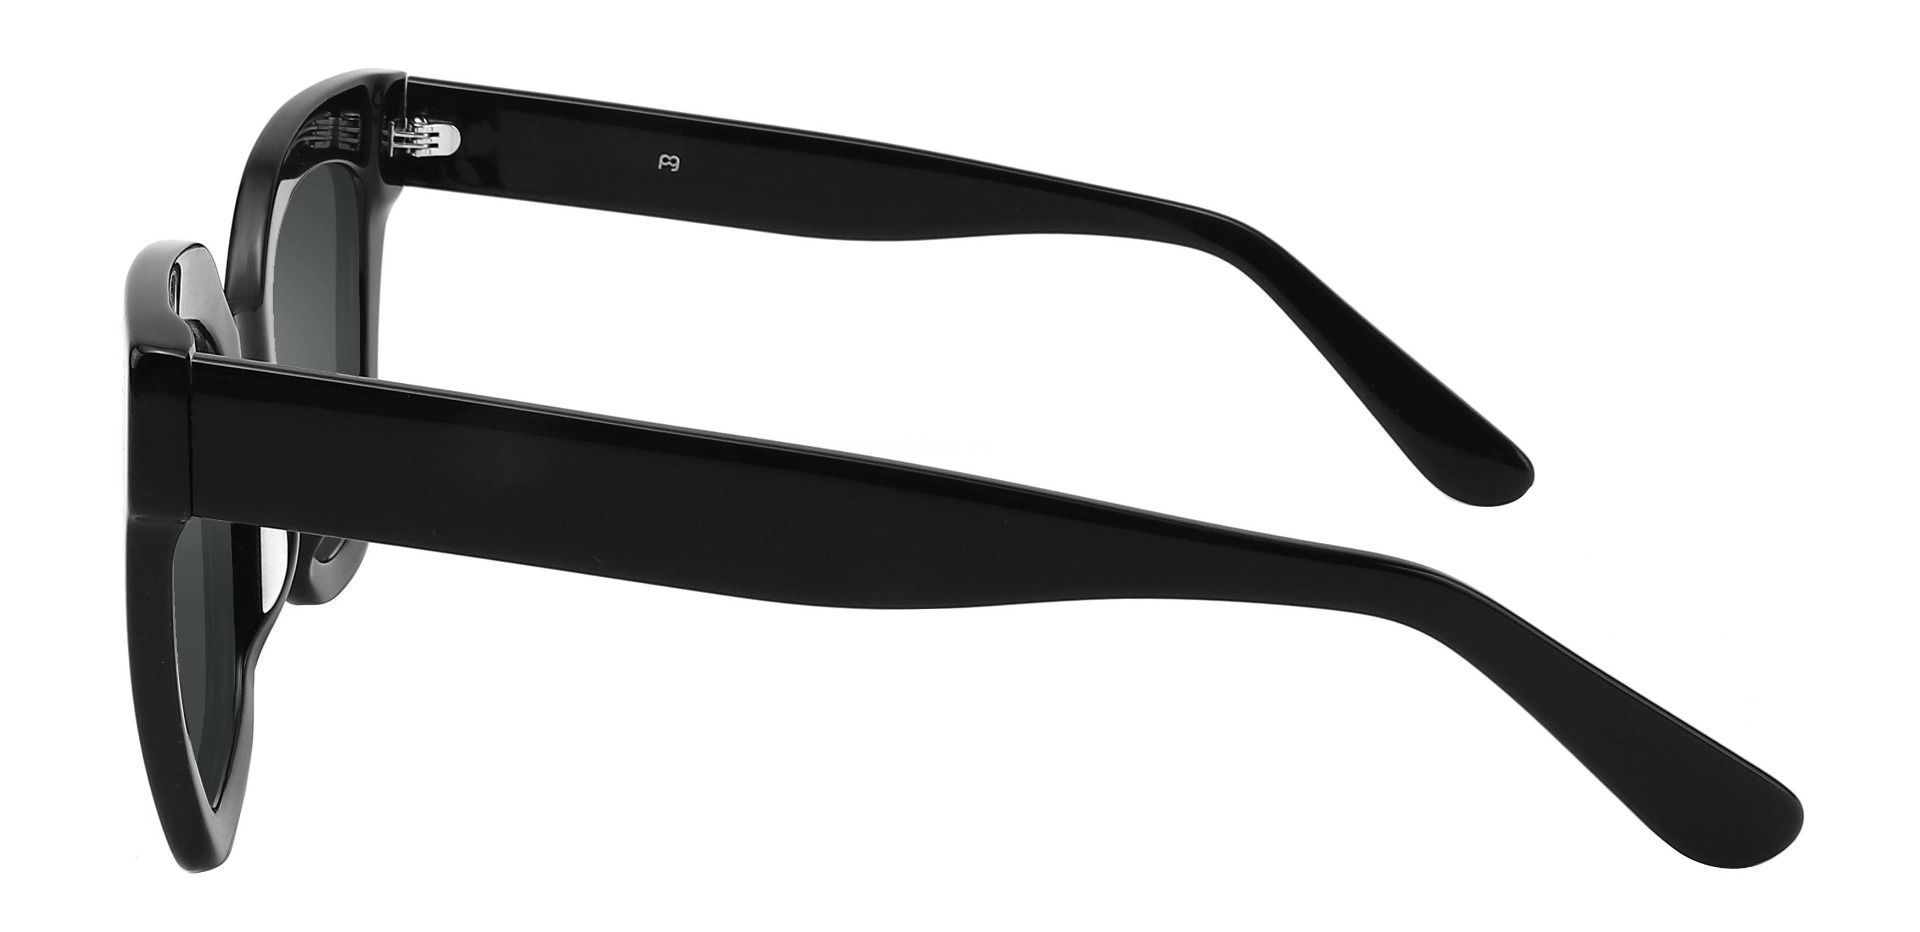 Faith Cat Eye Reading Sunglasses - Black Frame With Gray Lenses